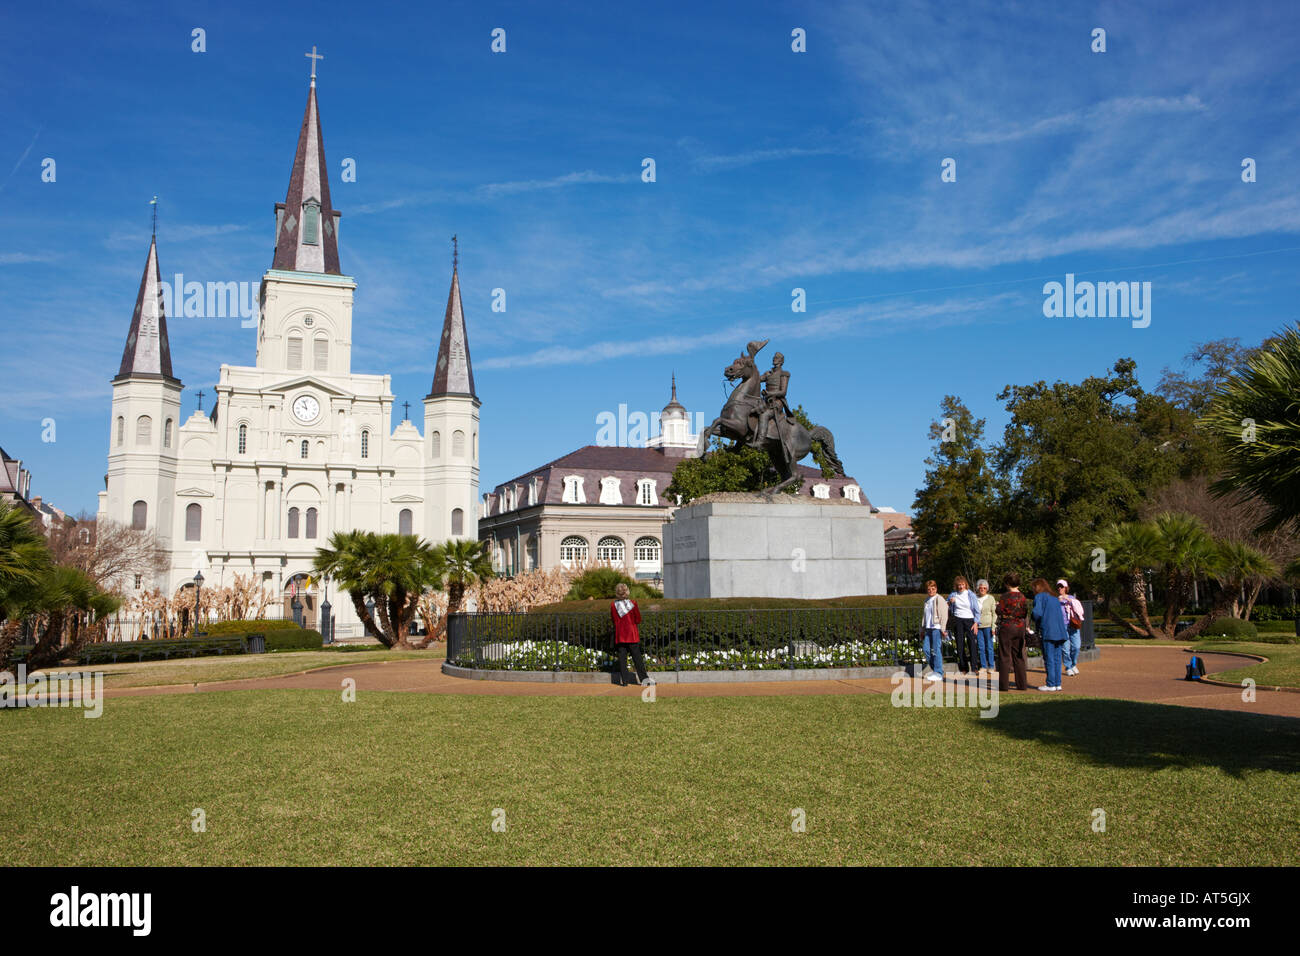 Les touristes au Général Andrew Jackson monument sur Jackson Square. La Nouvelle-Orléans, Louisiane, Etats-Unis. Banque D'Images